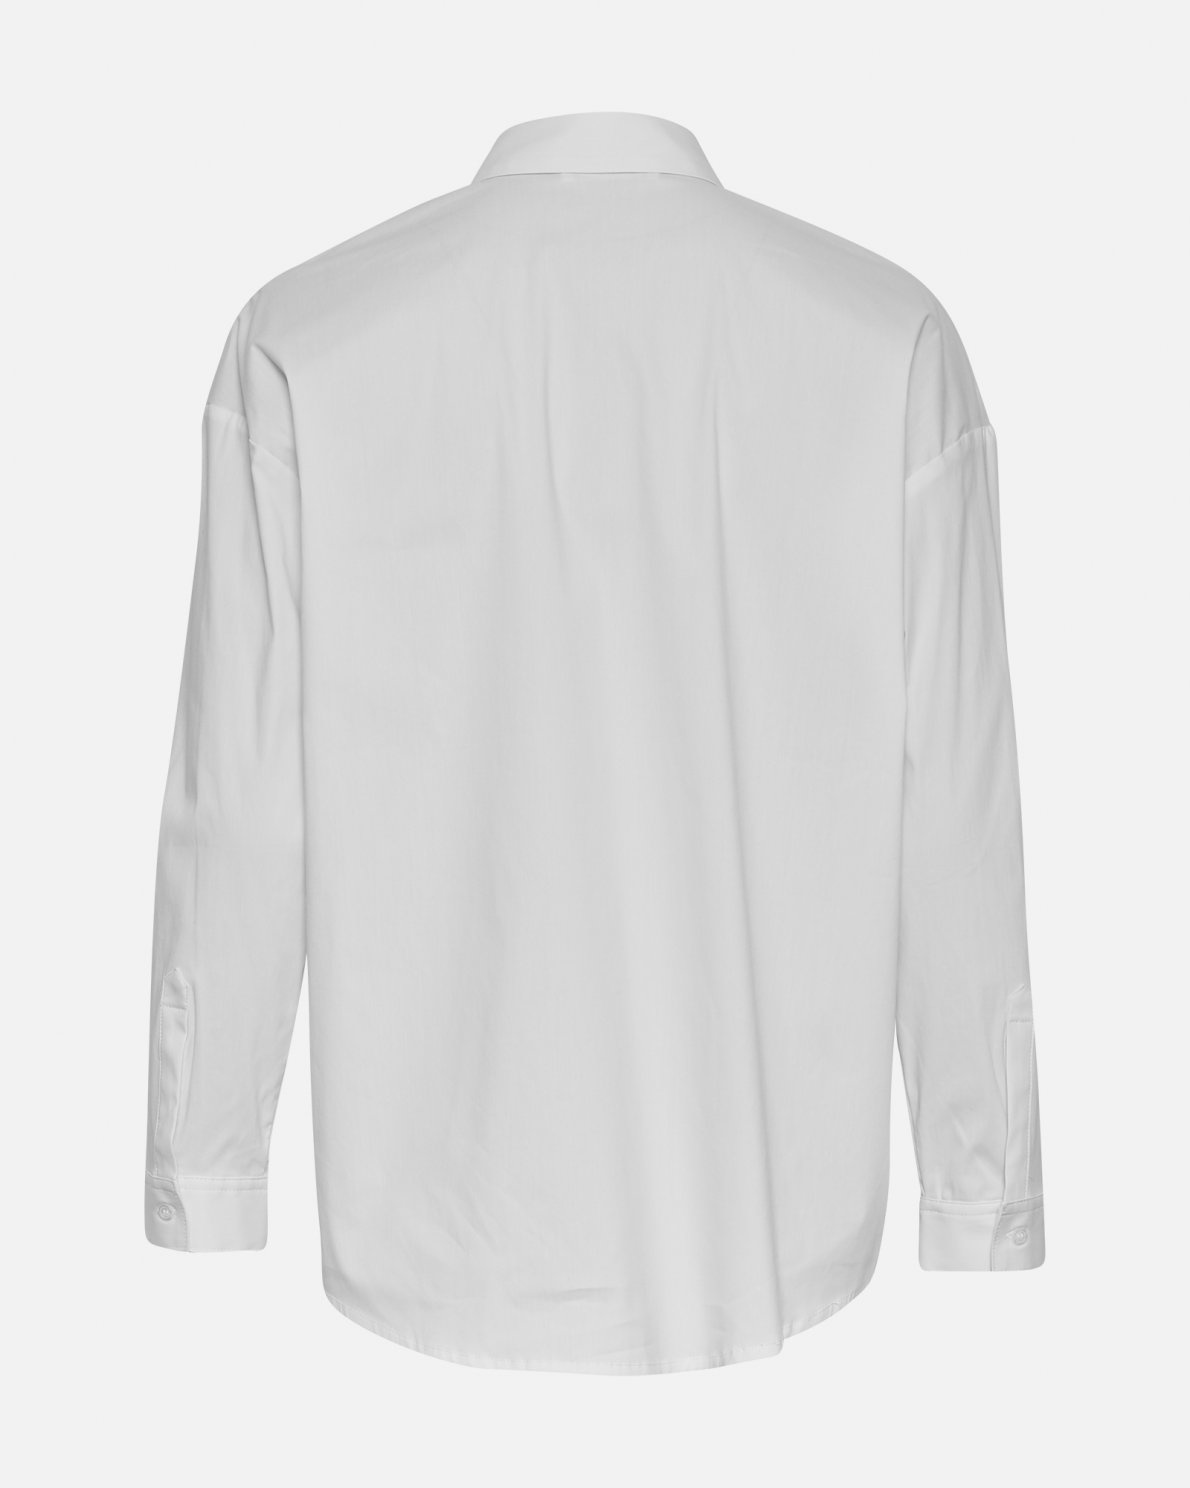 Odine Ava Oversized White Shirt-3